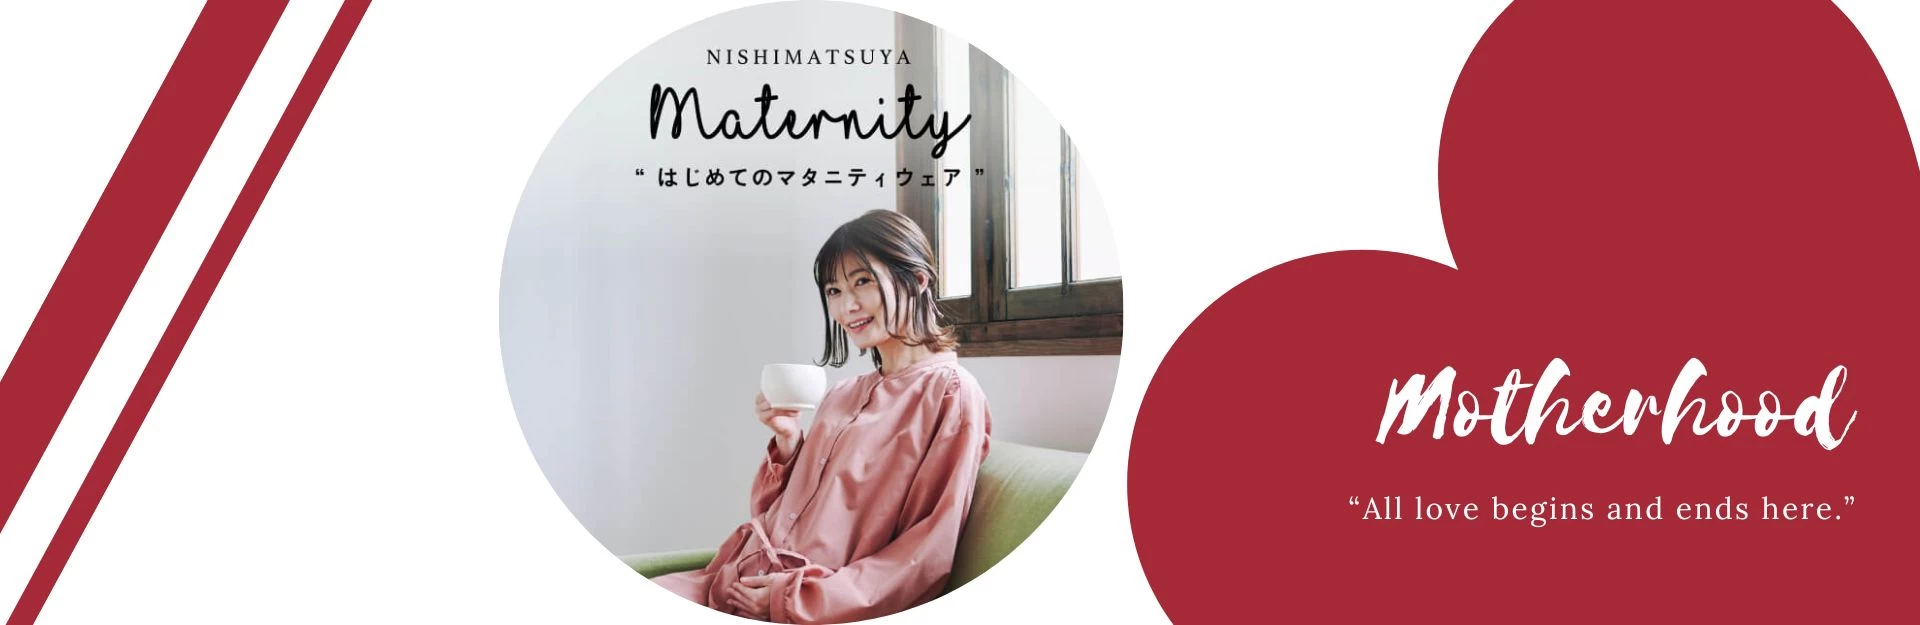 TITA - Đối tác tin cậy NISHIMATSUYA - Hệ thống cửa hàng mẹ và bé hàng đầu